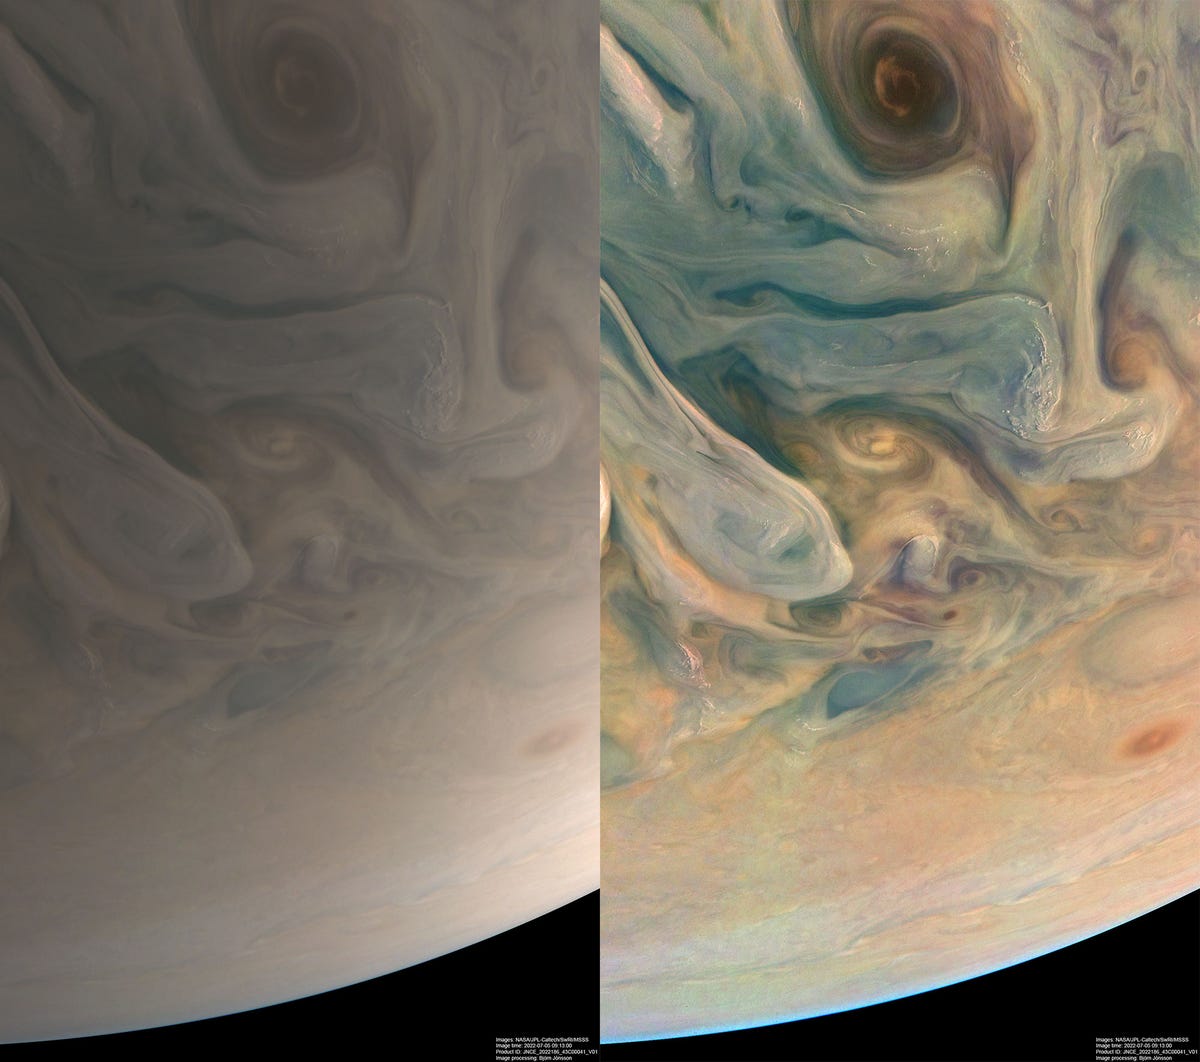 왼쪽은 목성의 부드러운 베이지색 버전입니다.  오른쪽은 파란색, 주황색 및 노란색 음영을 제외하고 동일한 이미지입니다.